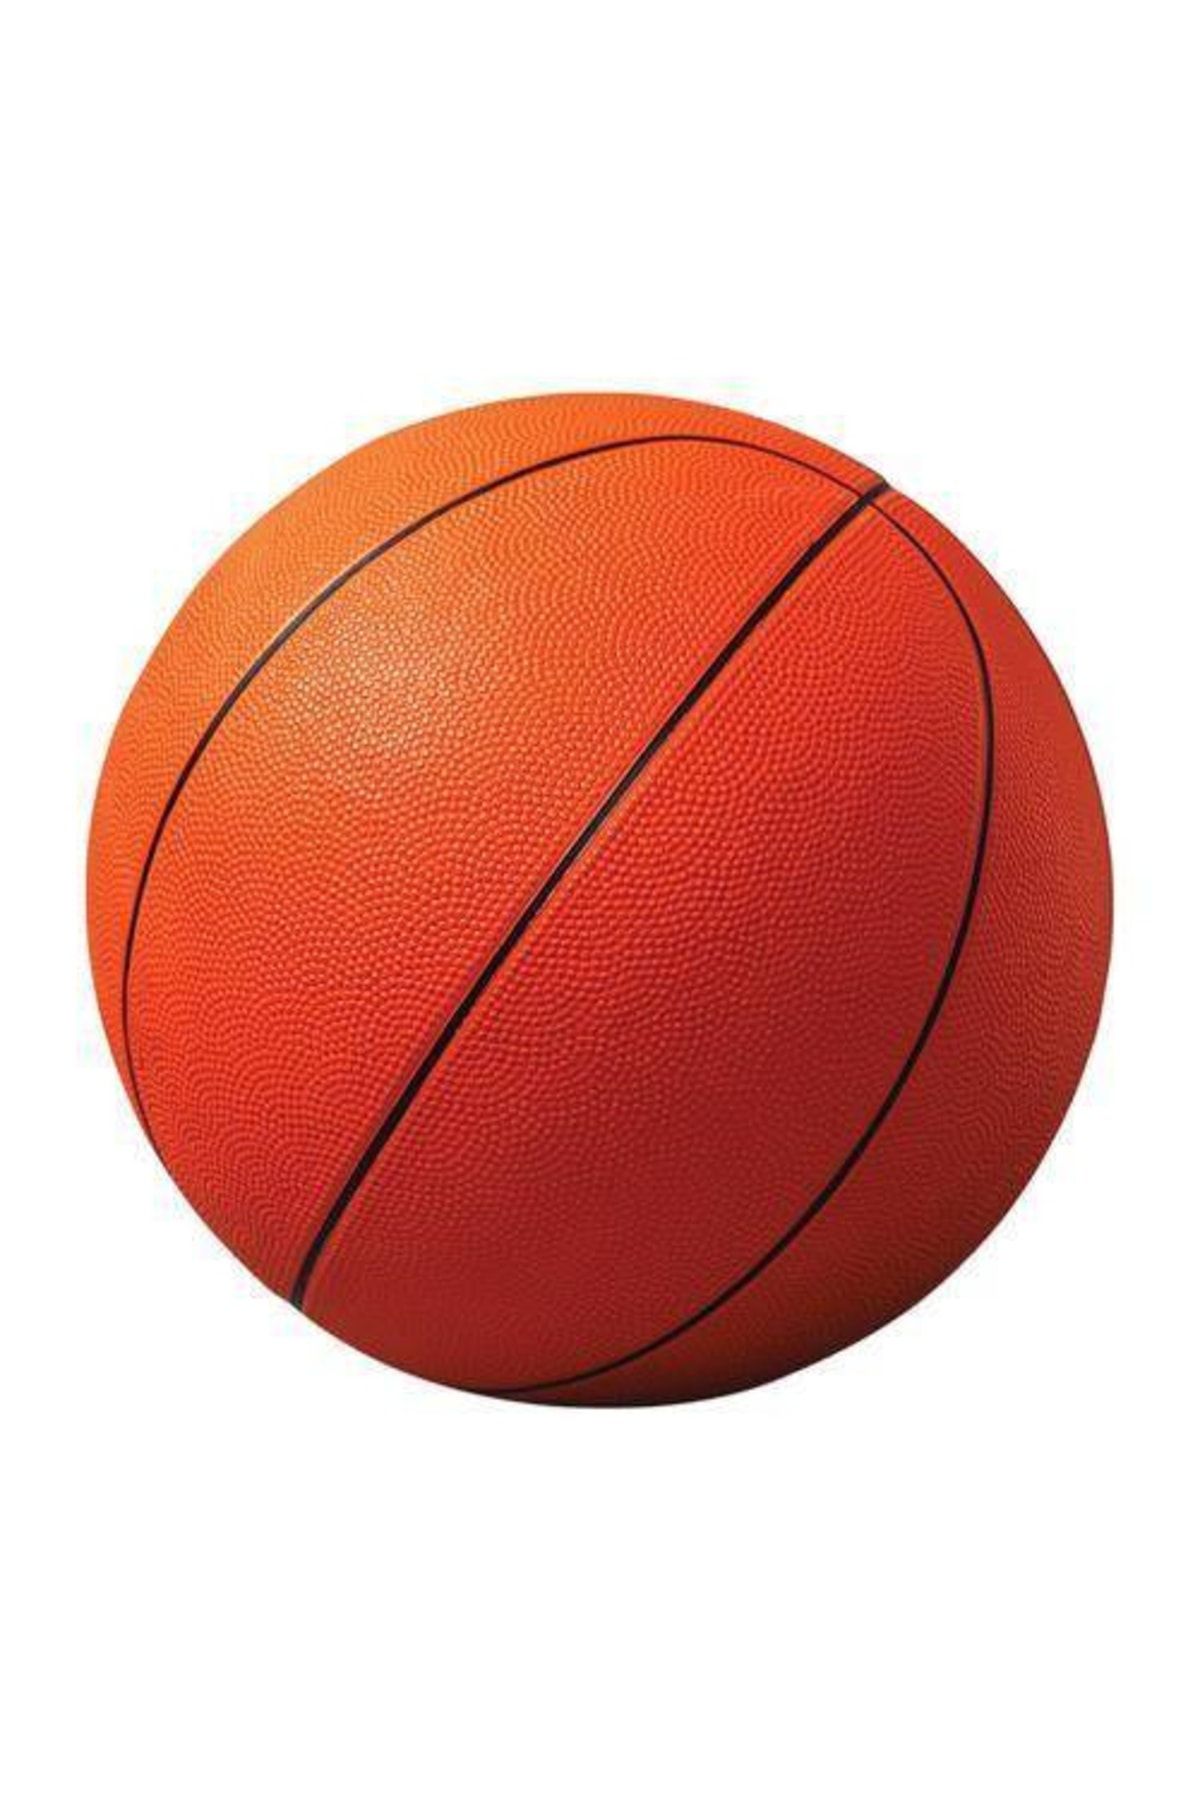 FırsatVar Okul Kolej Liseler Için Kauçuk Basketbol Topu Profesyonel Boy